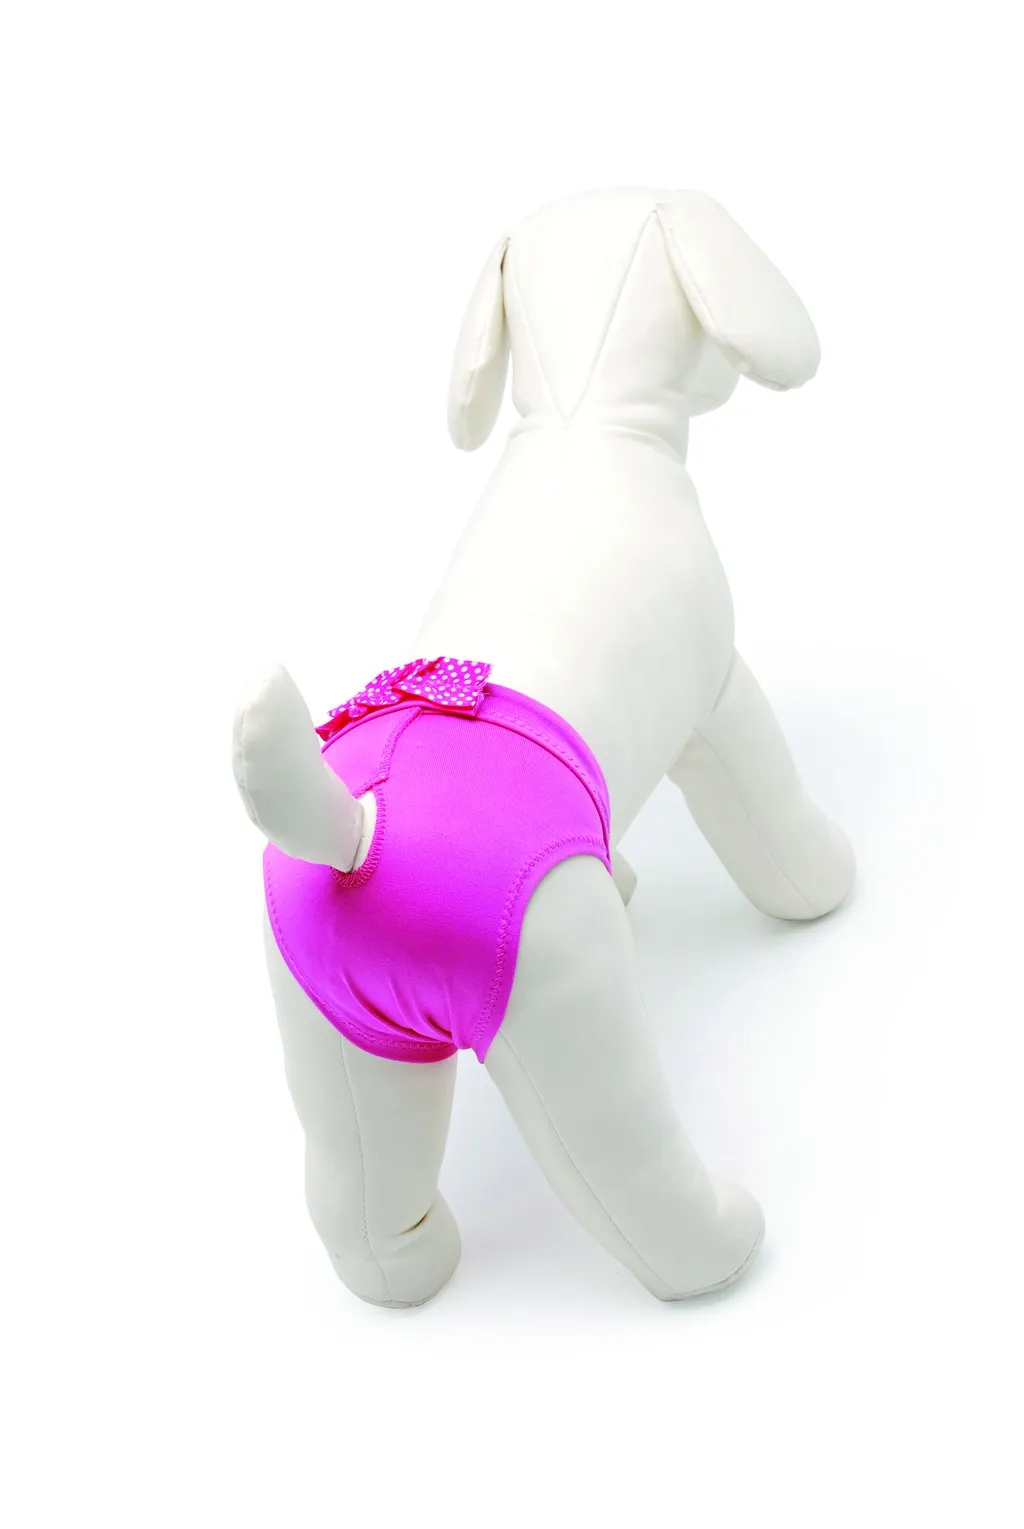 Camon Microfiber Dog Pants with Bow - бански/ хигиенни гащи за разгонени женски кучета, микрофибър розови 34 см. 2